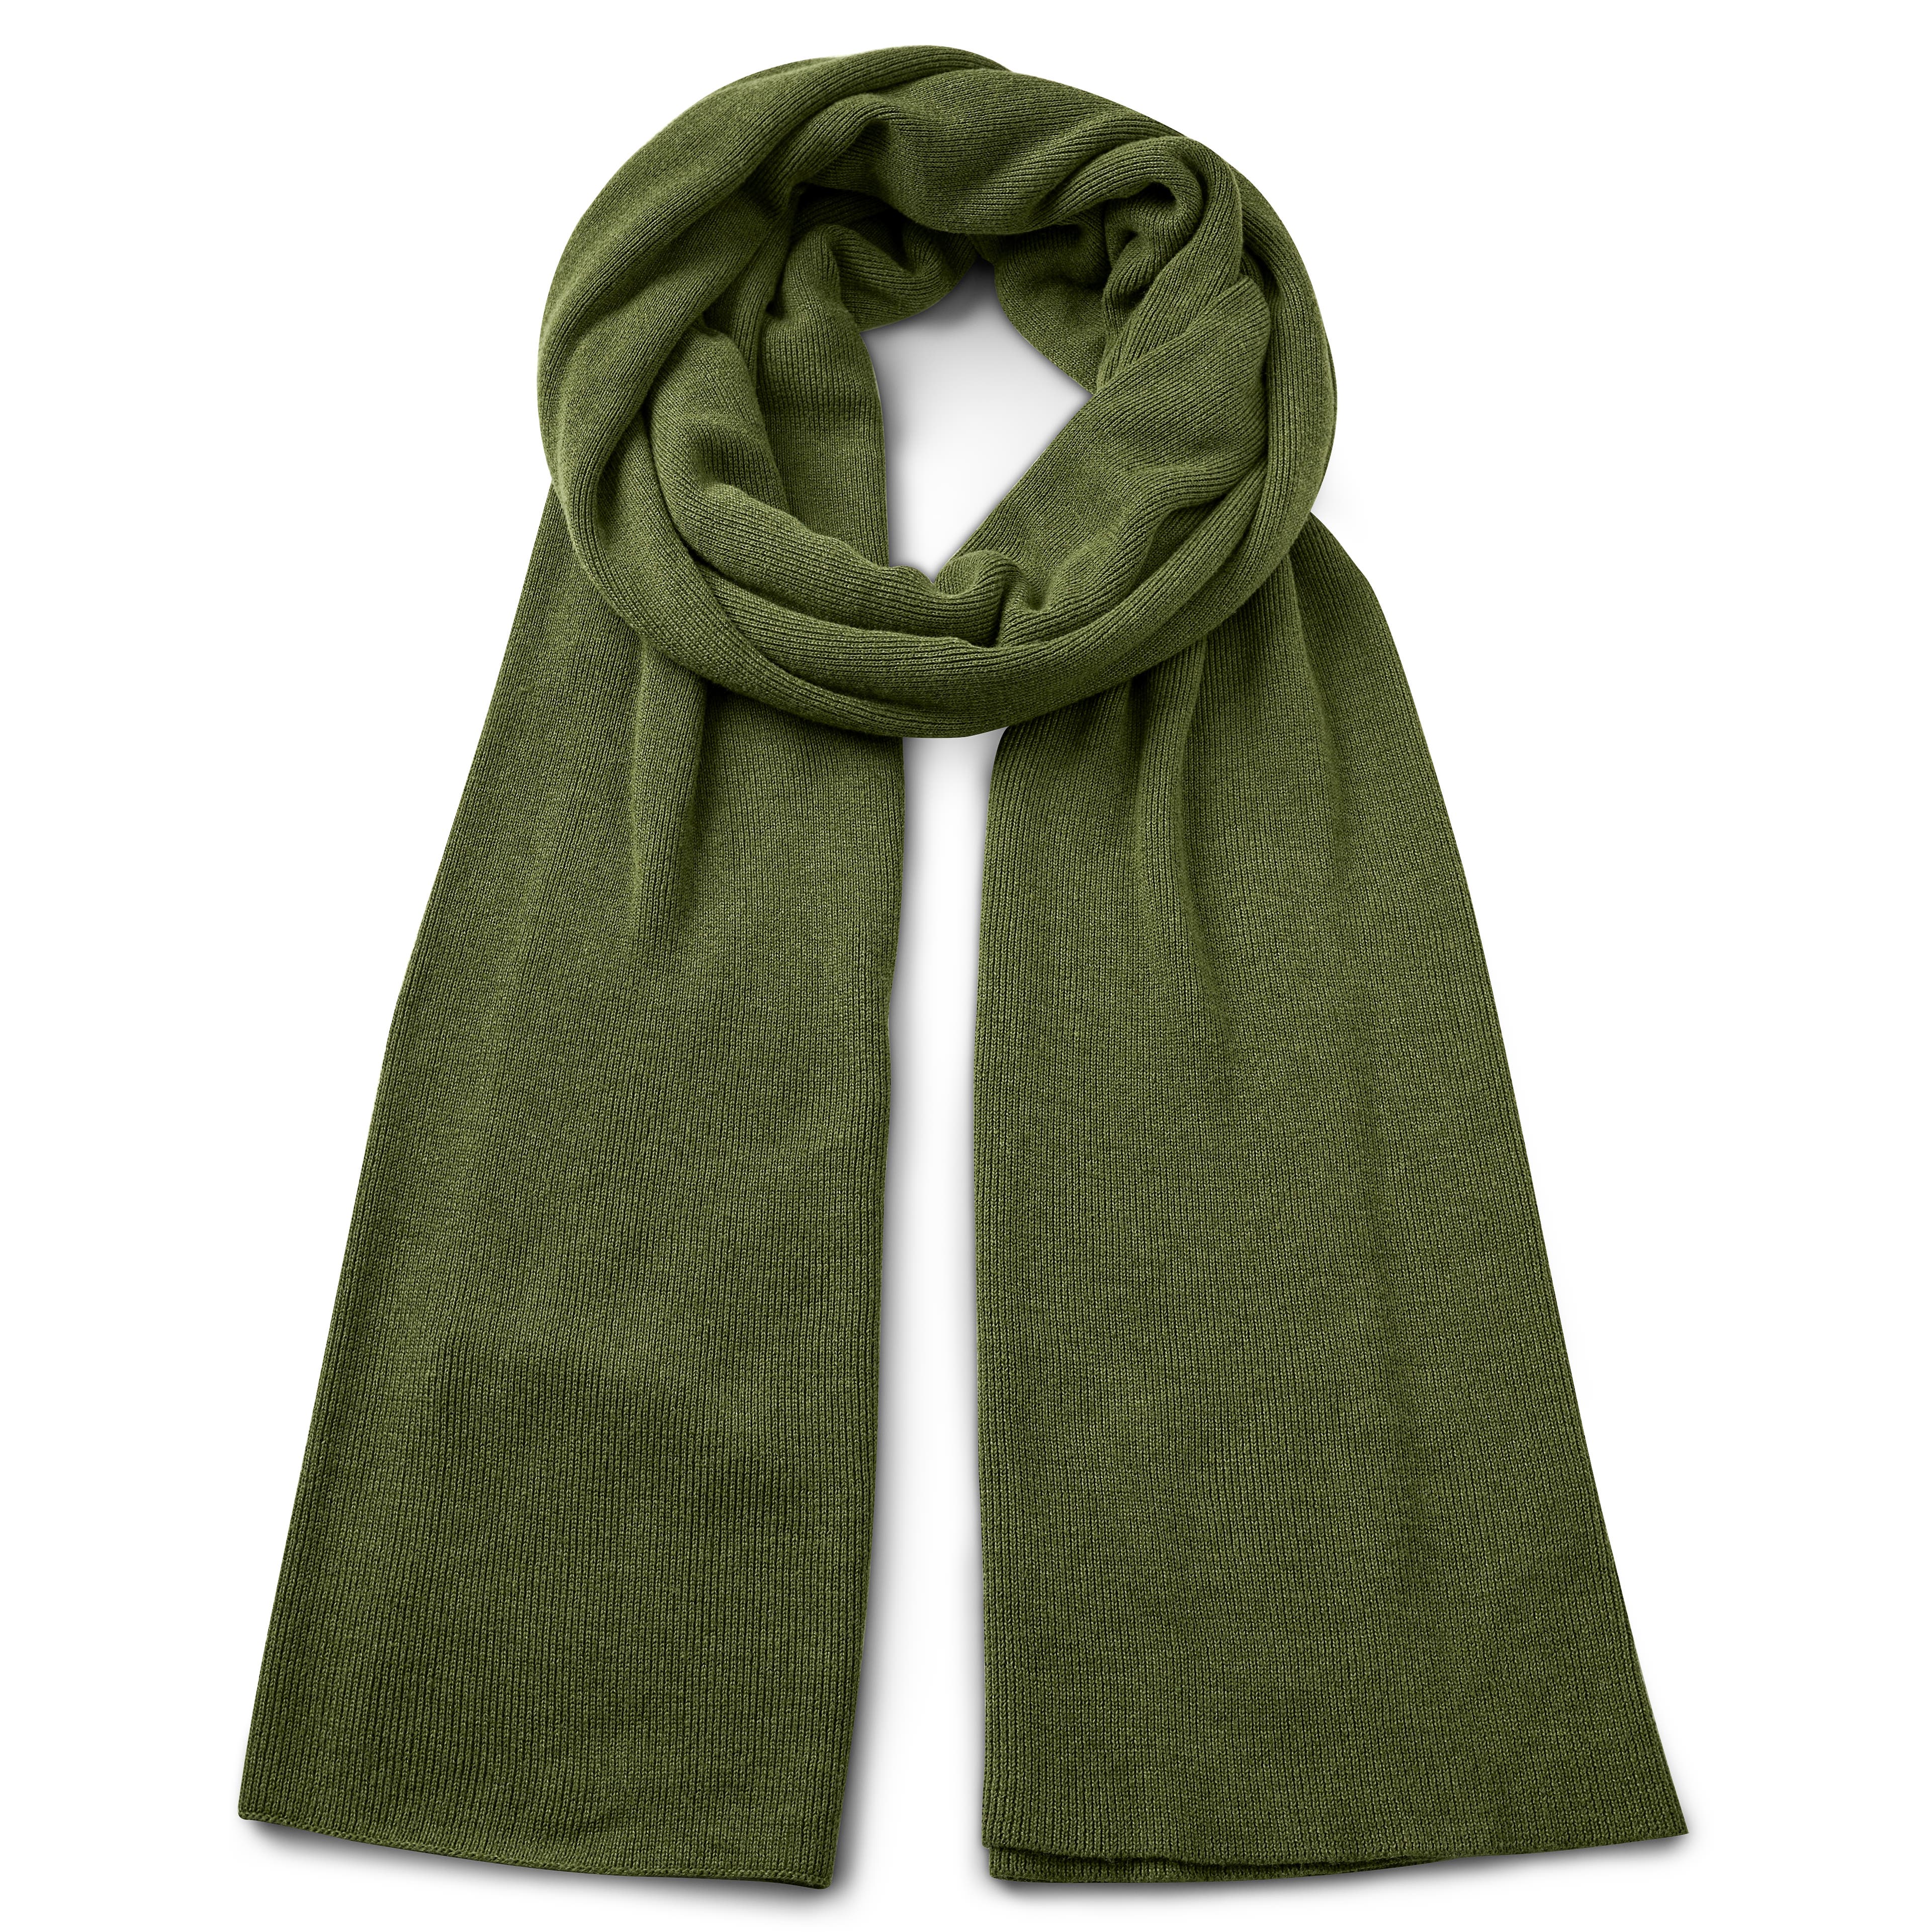 Hiems | Grüner Schal aus recycelter Baumwolle